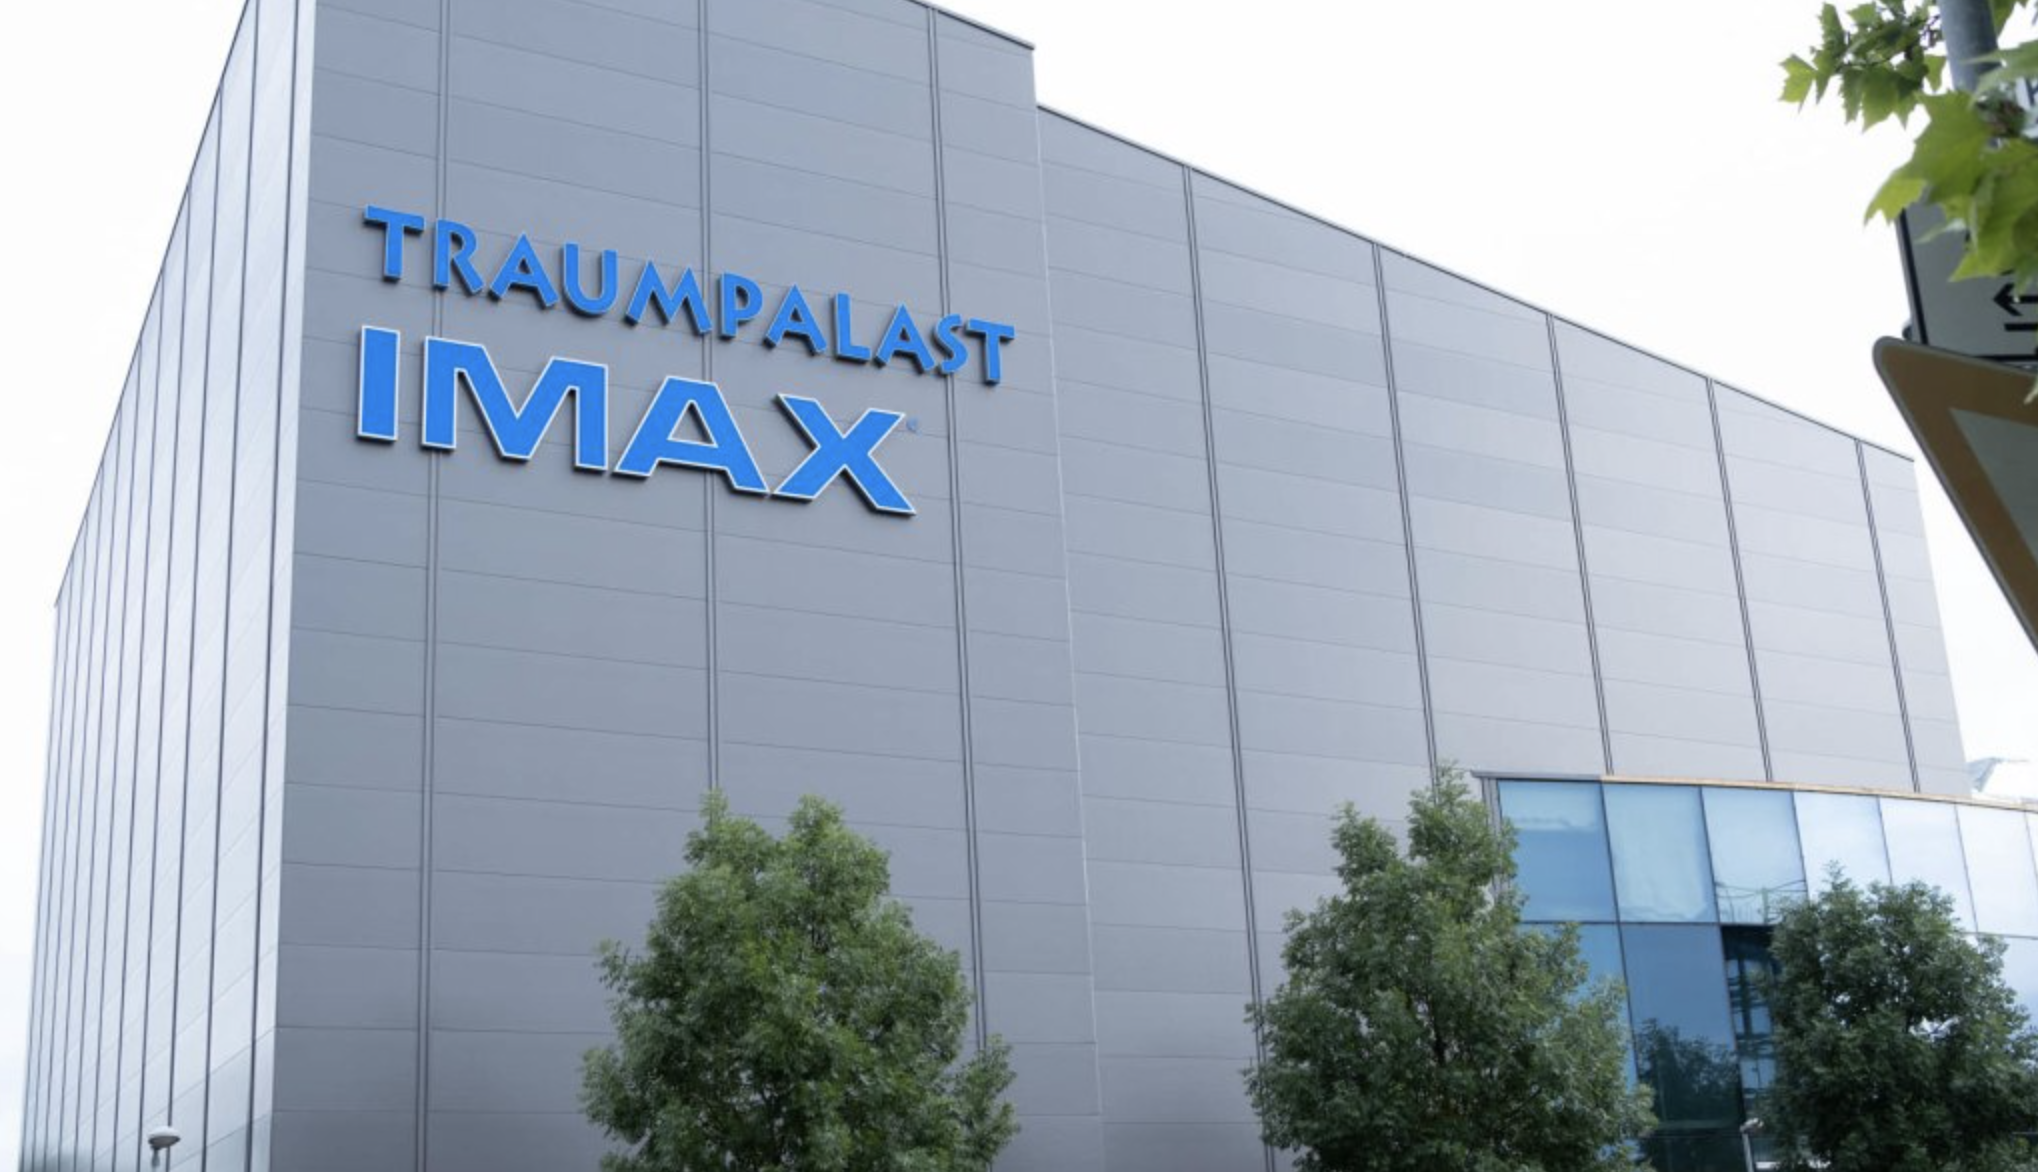 Le plus grand écran IMAX du monde ouvre en Allemagne